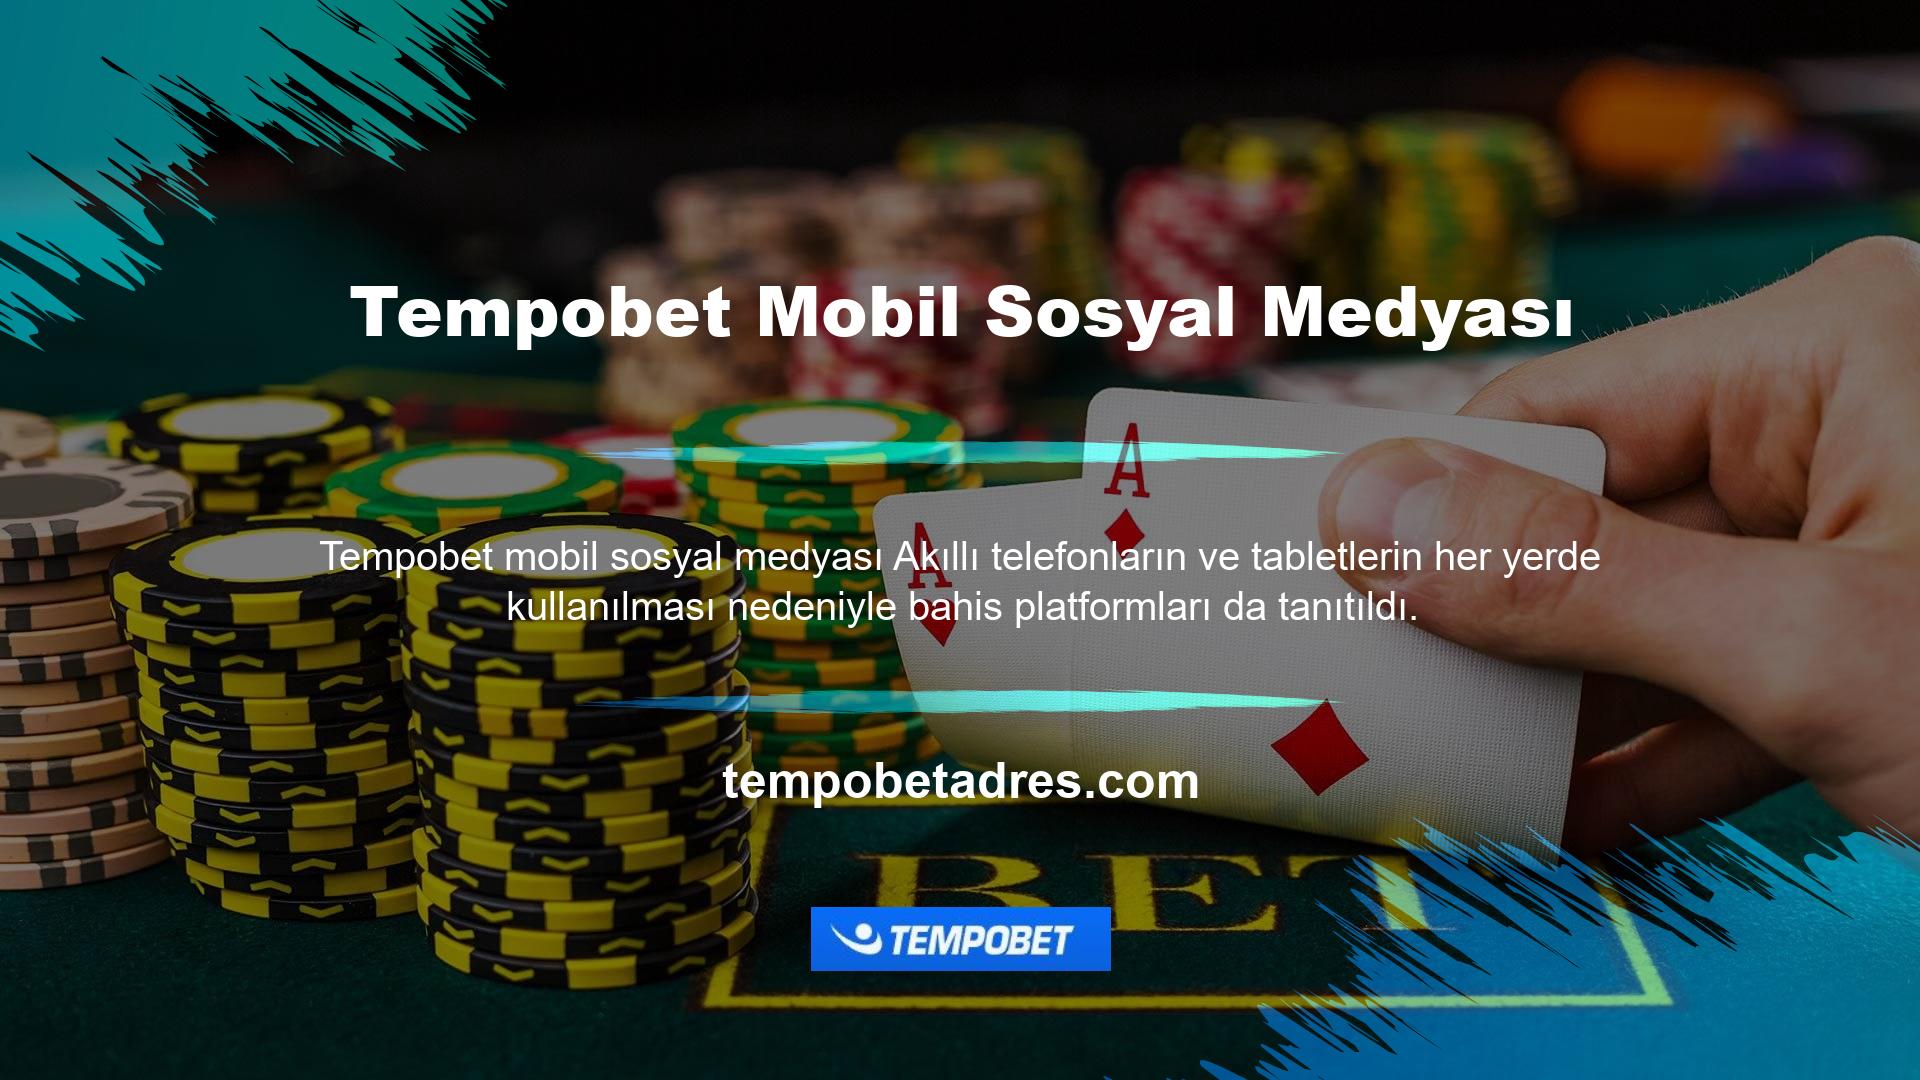 Tempobet web sitesi, üyelerine mobil uygulama sunan ilk web sitelerinden biri olmuş ve Tempobet mobil giriş uygulaması ile daha fazla kullanıcıya ulaşmıştır